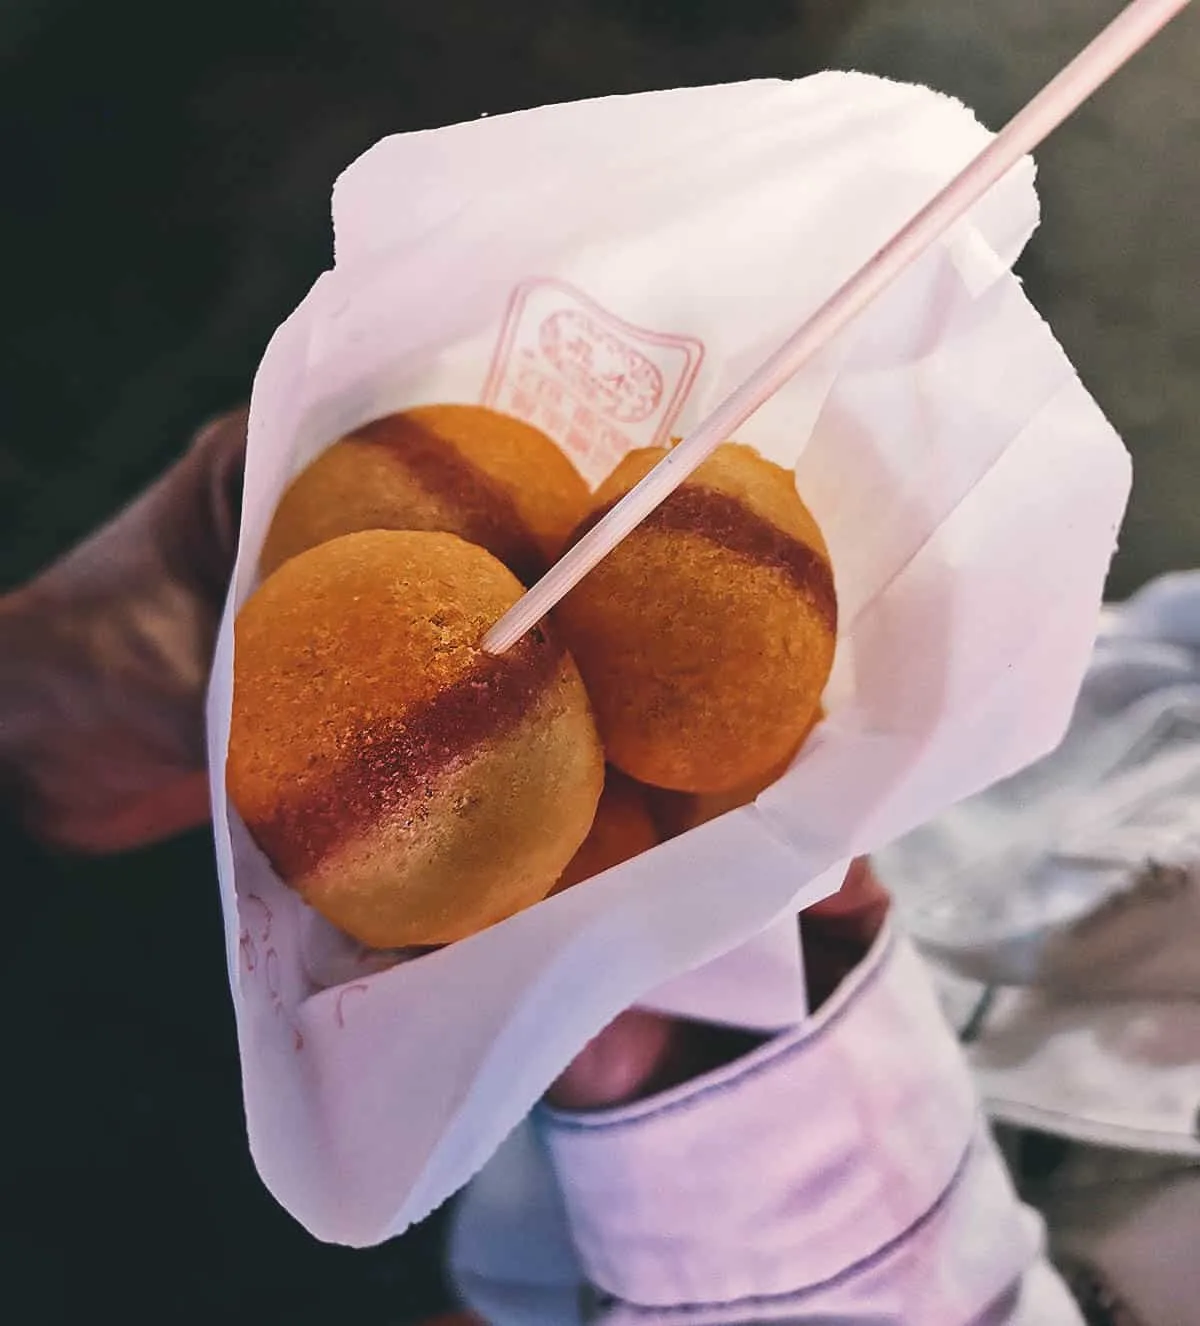 Sweet potato balls at a Taiwanese night market